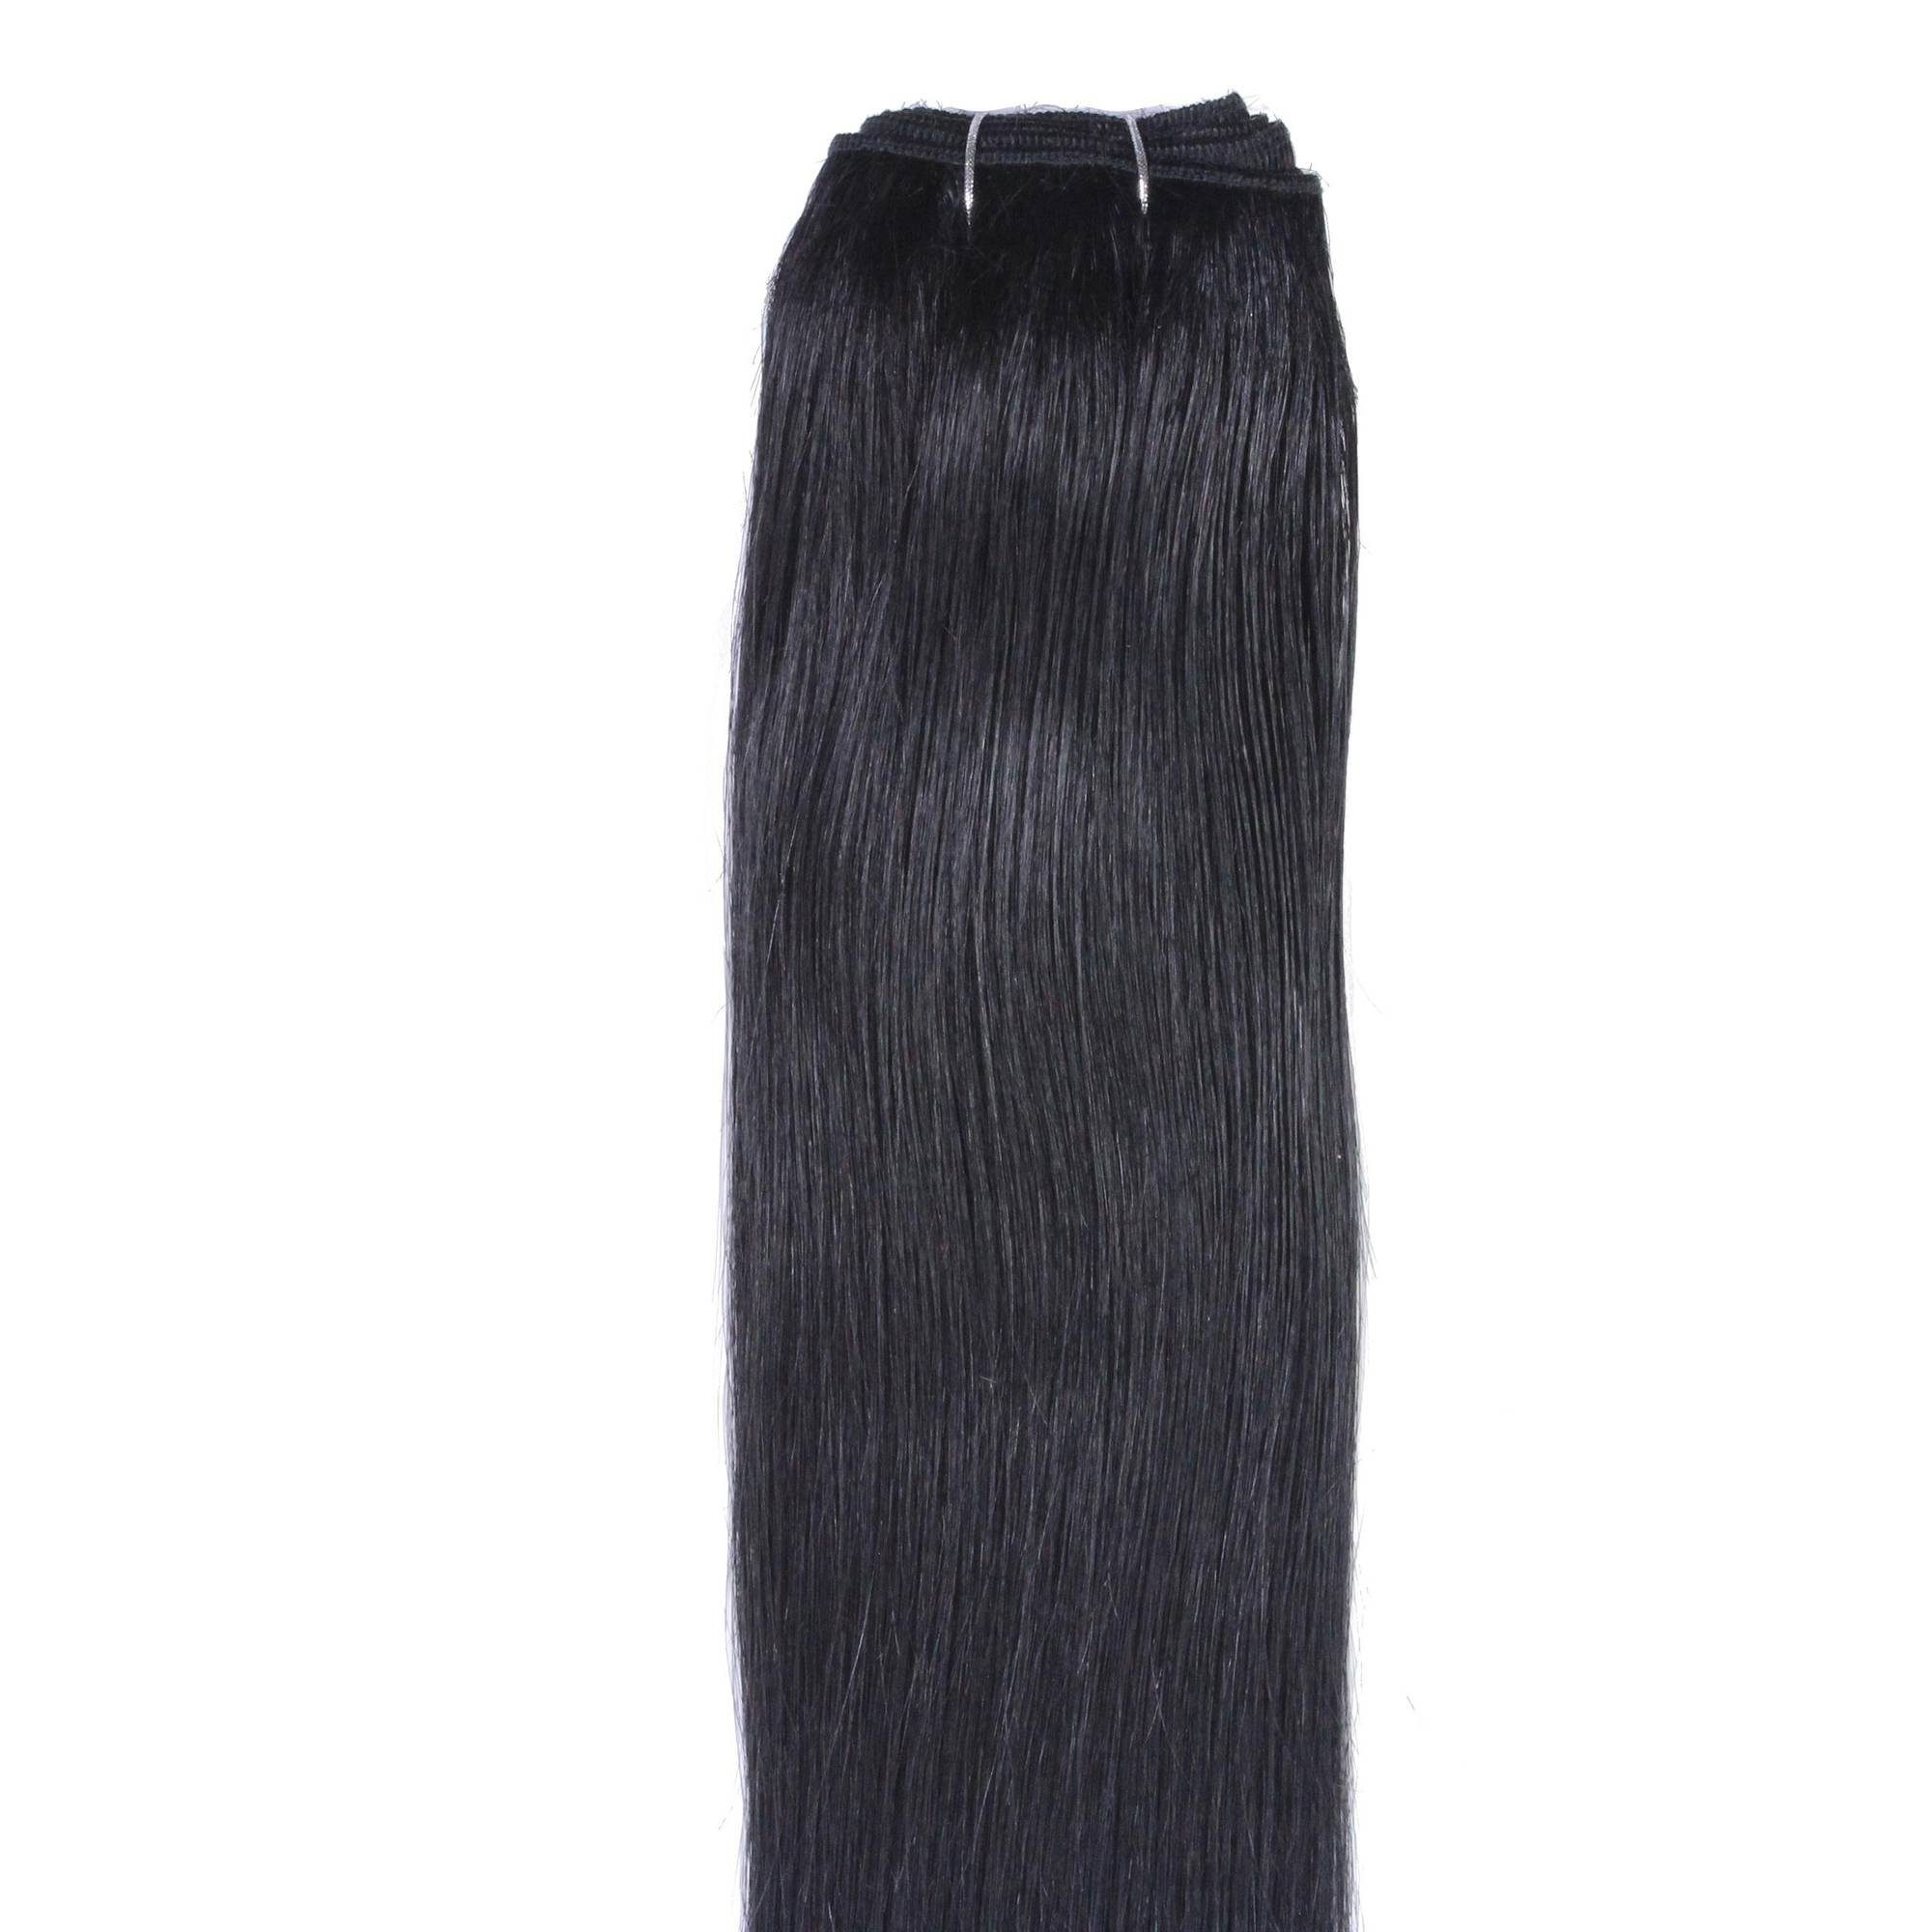 Schwarz Echthaartresse #2/0 40cm Echthaar-Extension Glatte hair2heart